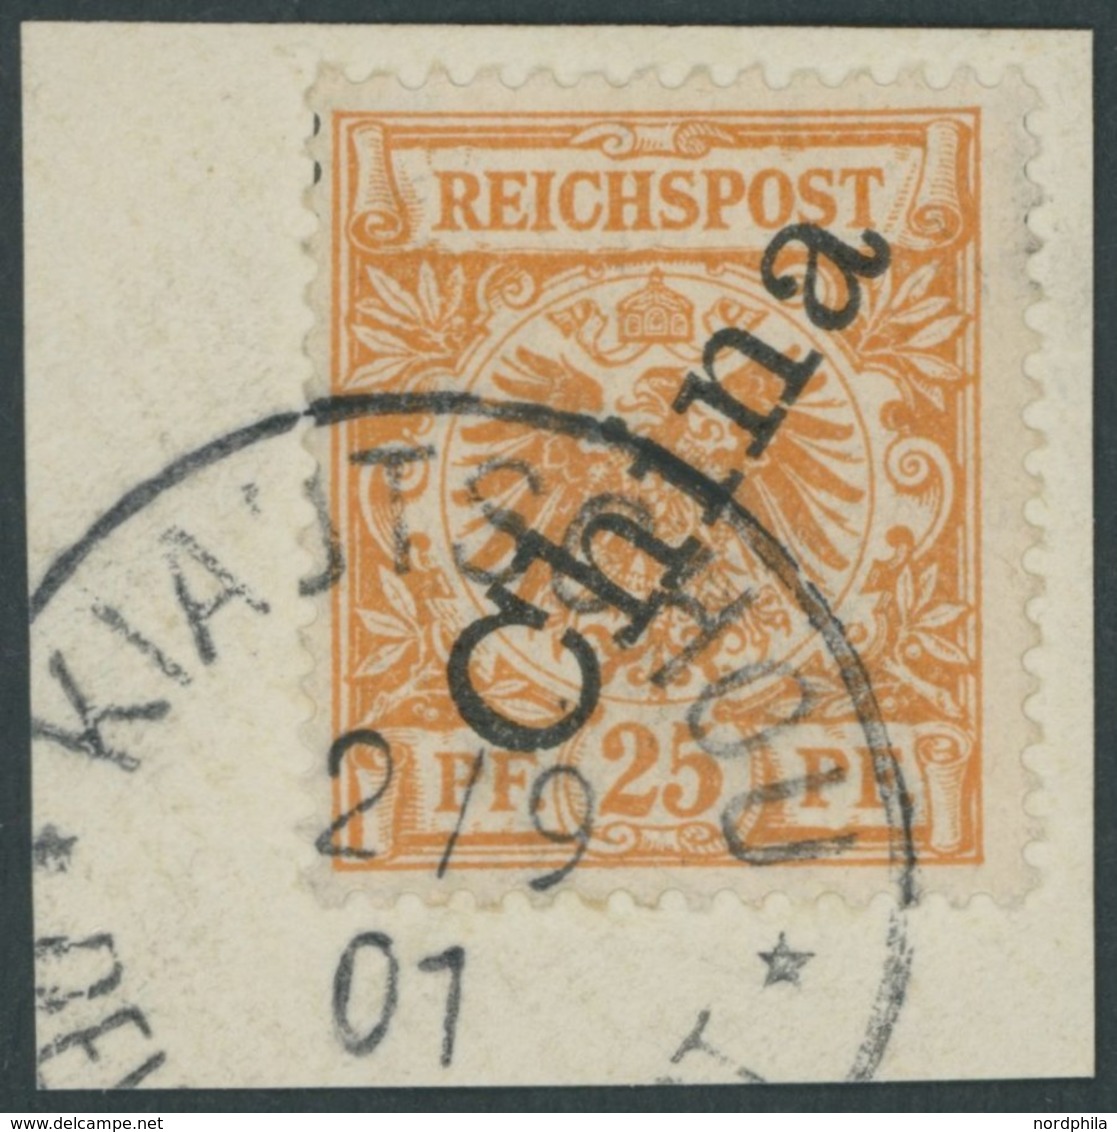 KIAUTSCHOU M 5IIa BrfStk, 1901, 25 Pf. Gelblichorange Steiler Aufdruck, Stempel KIAUTSCHOU DP ** Prachtbriefstück - Kiautchou